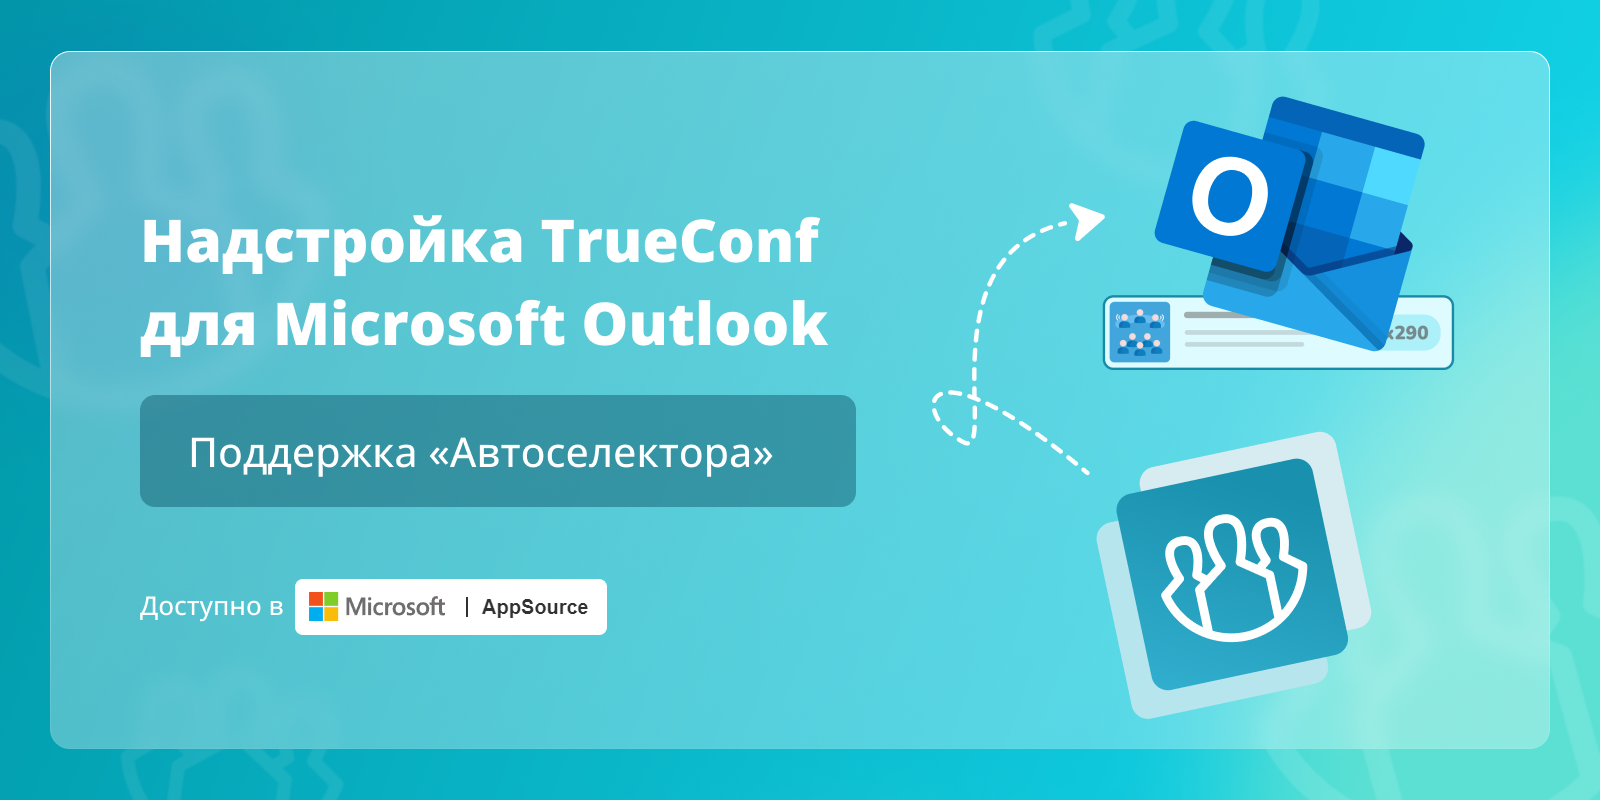 Поддержка «Автоселектора» в надстройке TrueConf для Microsoft Outlook 1